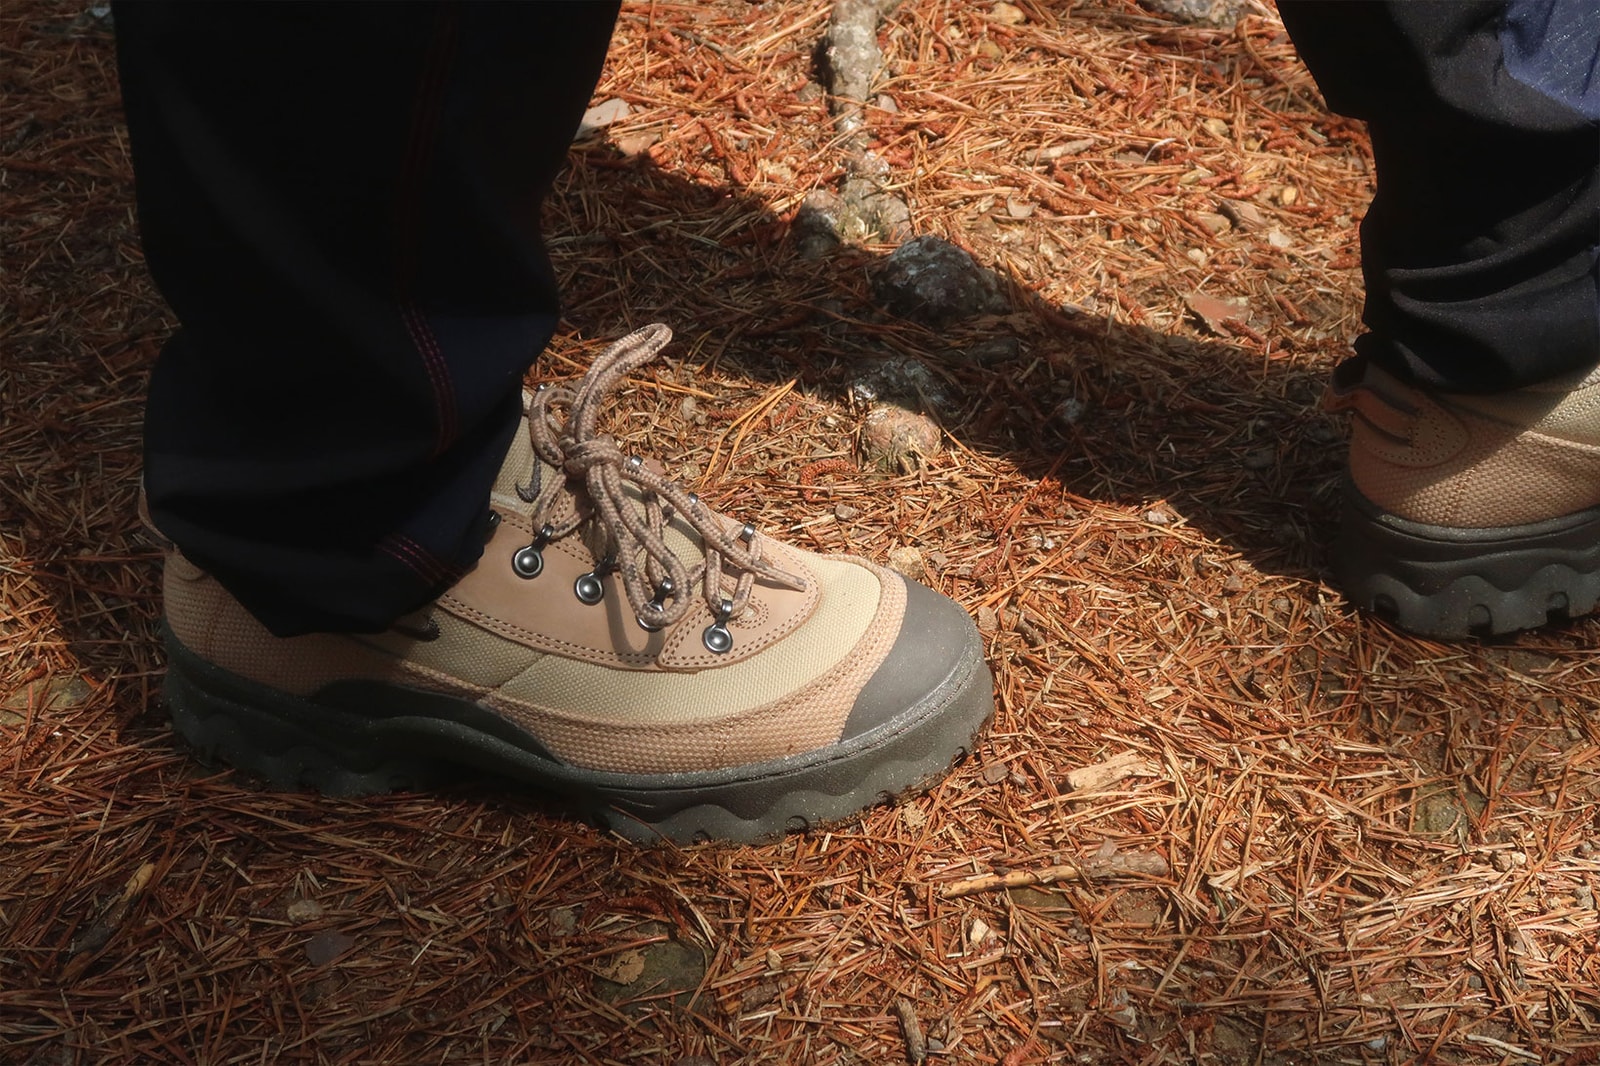 Nike Lahar Low "Grain" Womens Hiking Shoe Review |